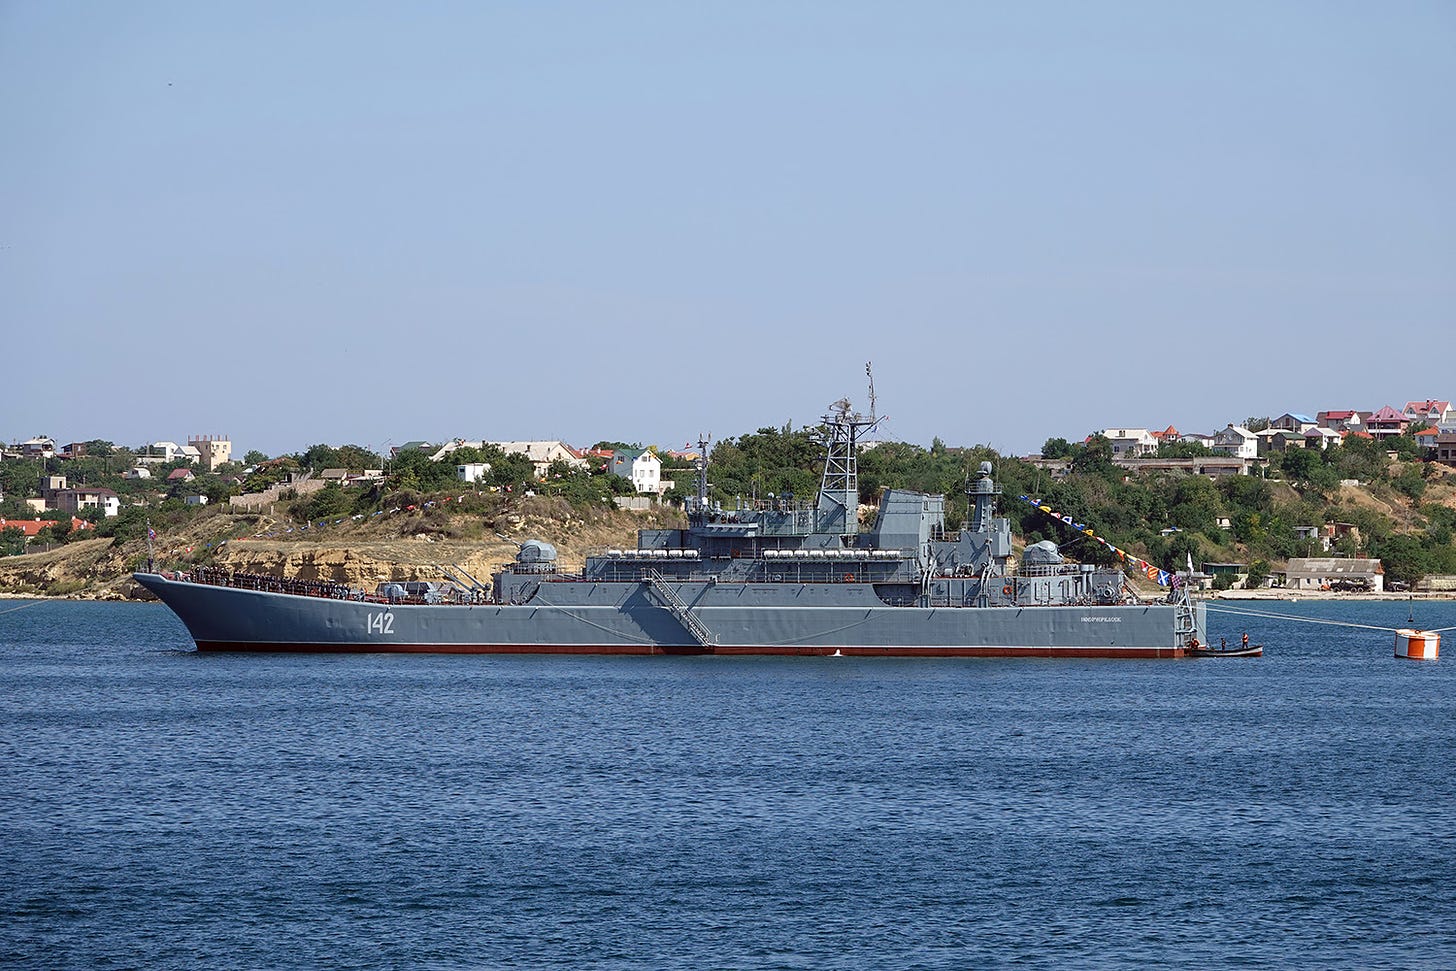 The Russian warship Novocherkassk, of the Black Sea Fleet, is pictured in Sevastopol, Crimea, on July 27, 2019.